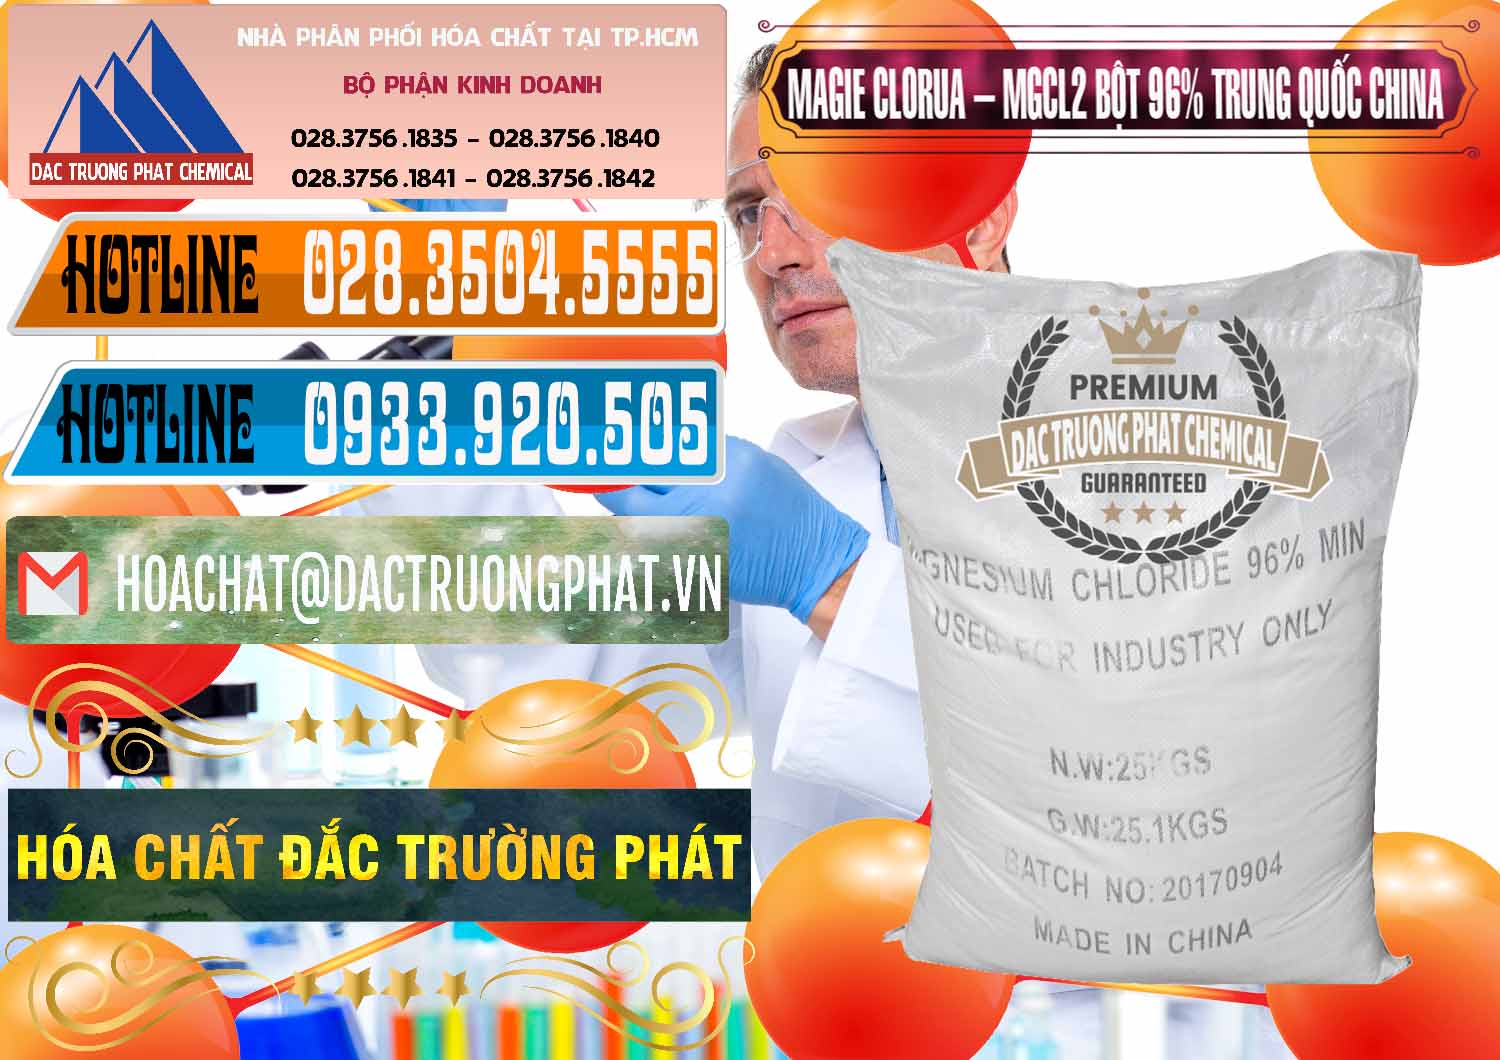 Đơn vị cung ứng và bán Magie Clorua – MGCL2 96% Dạng Bột Bao Chữ Đen Trung Quốc China - 0205 - Chuyên bán và cung cấp hóa chất tại TP.HCM - stmp.net